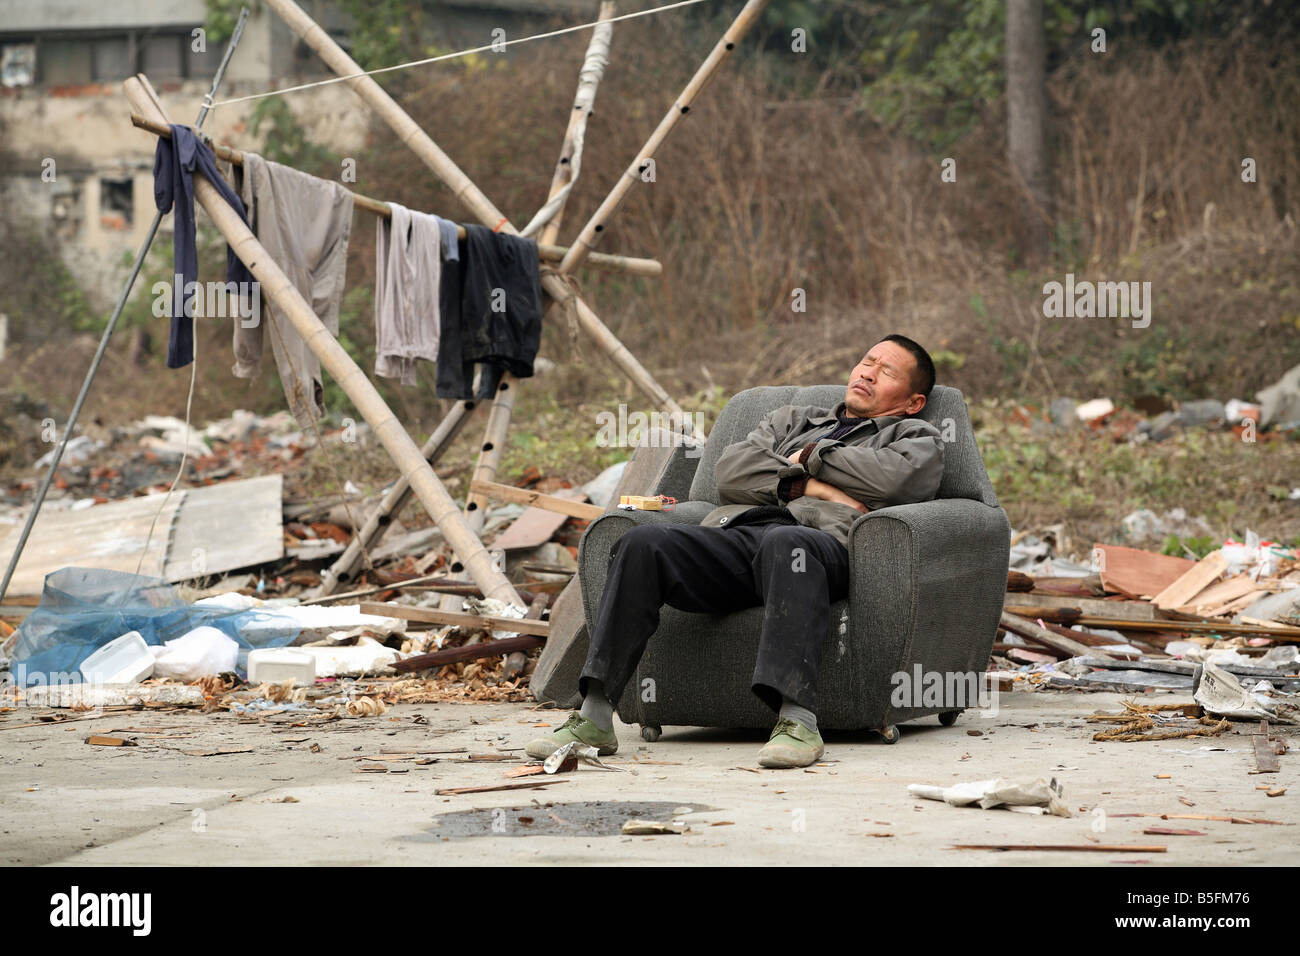 An Asian man sleeping in a chair, Suzhou, China Stock Photo